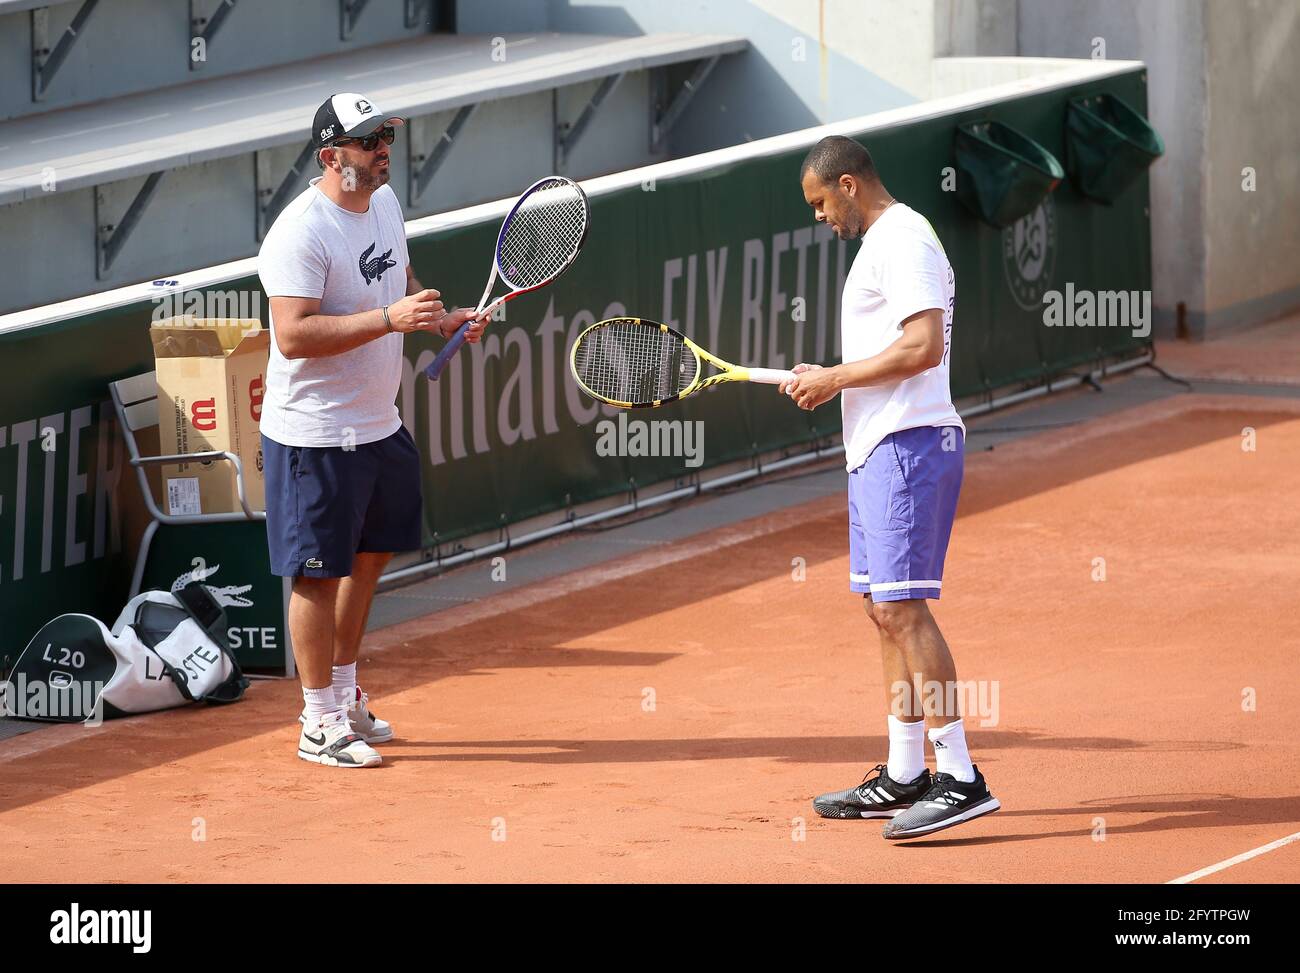 JO-Wilfried Tsonga de France et son entraîneur Thierry Ascione pendant la  pratique avant l'Open de France 2021, un tournoi de tennis Grand Slam au  stade Roland-Garros le 29 mai 2021 à Paris,